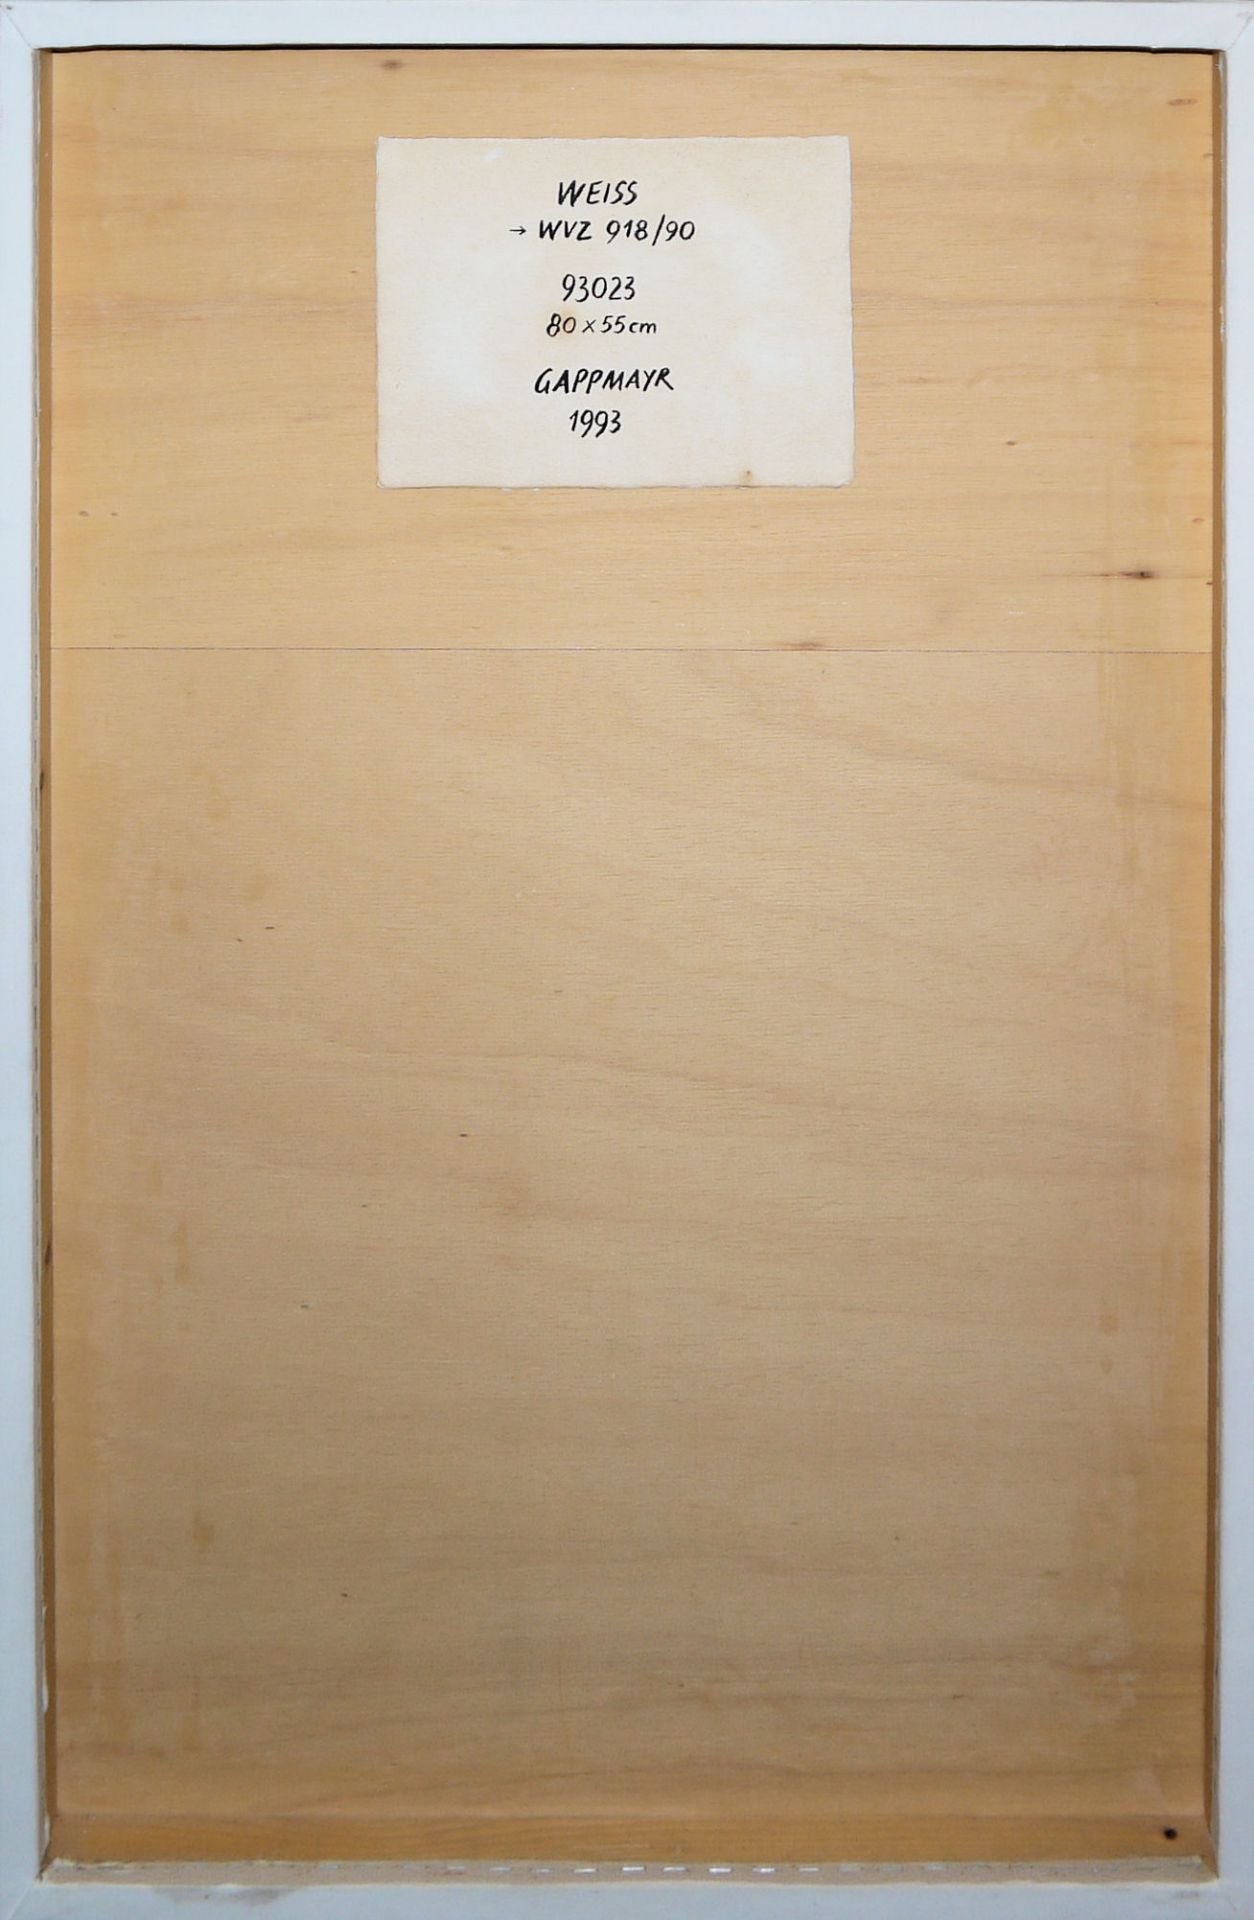 Heinz Gappmayr, "Weiss", Aquatec (WVZ 918/90), mit sign. Katalog "Modifikationen" & Monographie "Da - Bild 2 aus 3